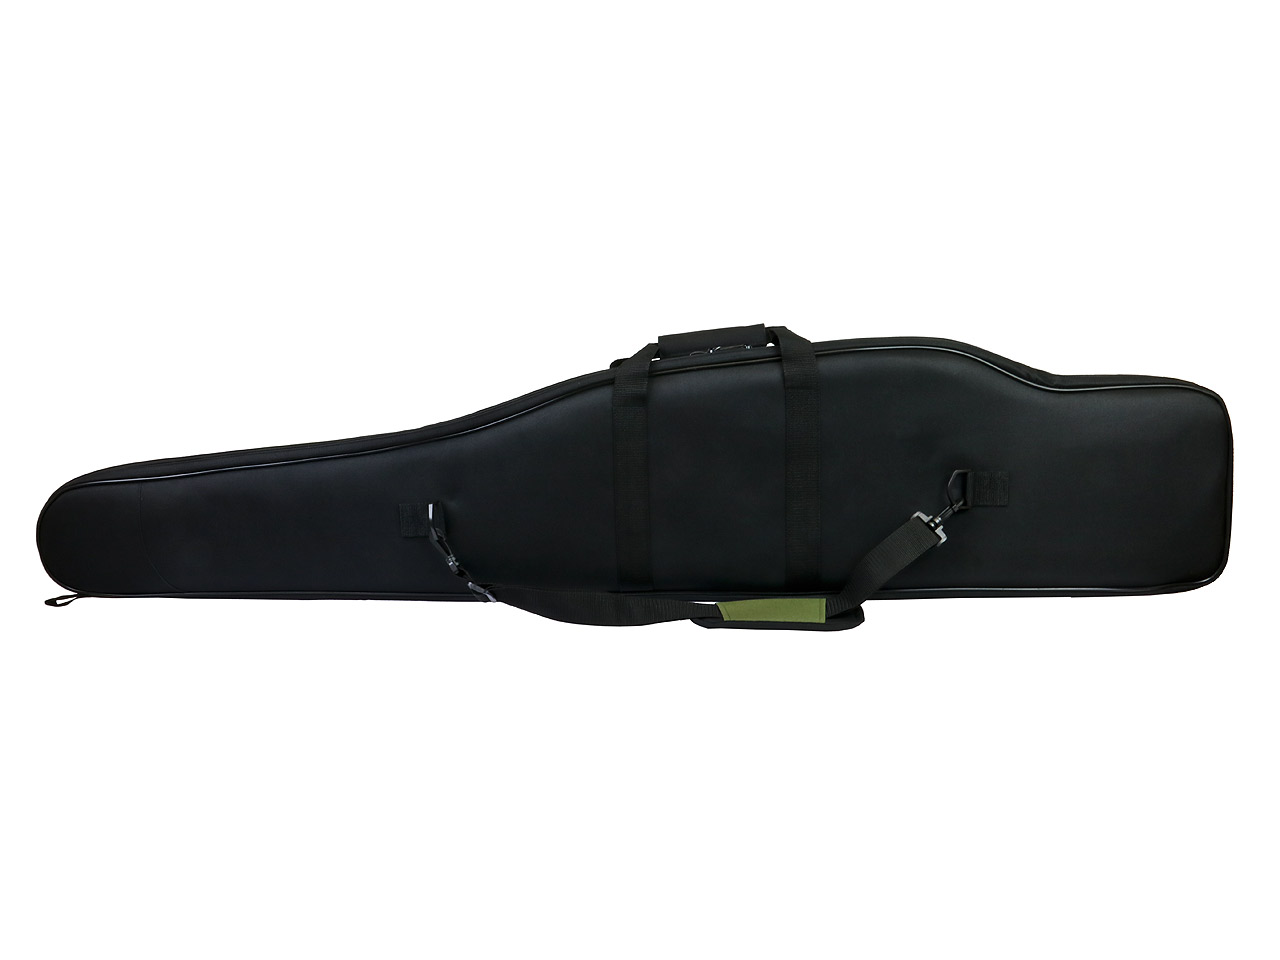 Gewehrfutteral, oliv-schwarz, 134 x 25 cm, Polyester, mit 2 Außentaschen, Tragegurt